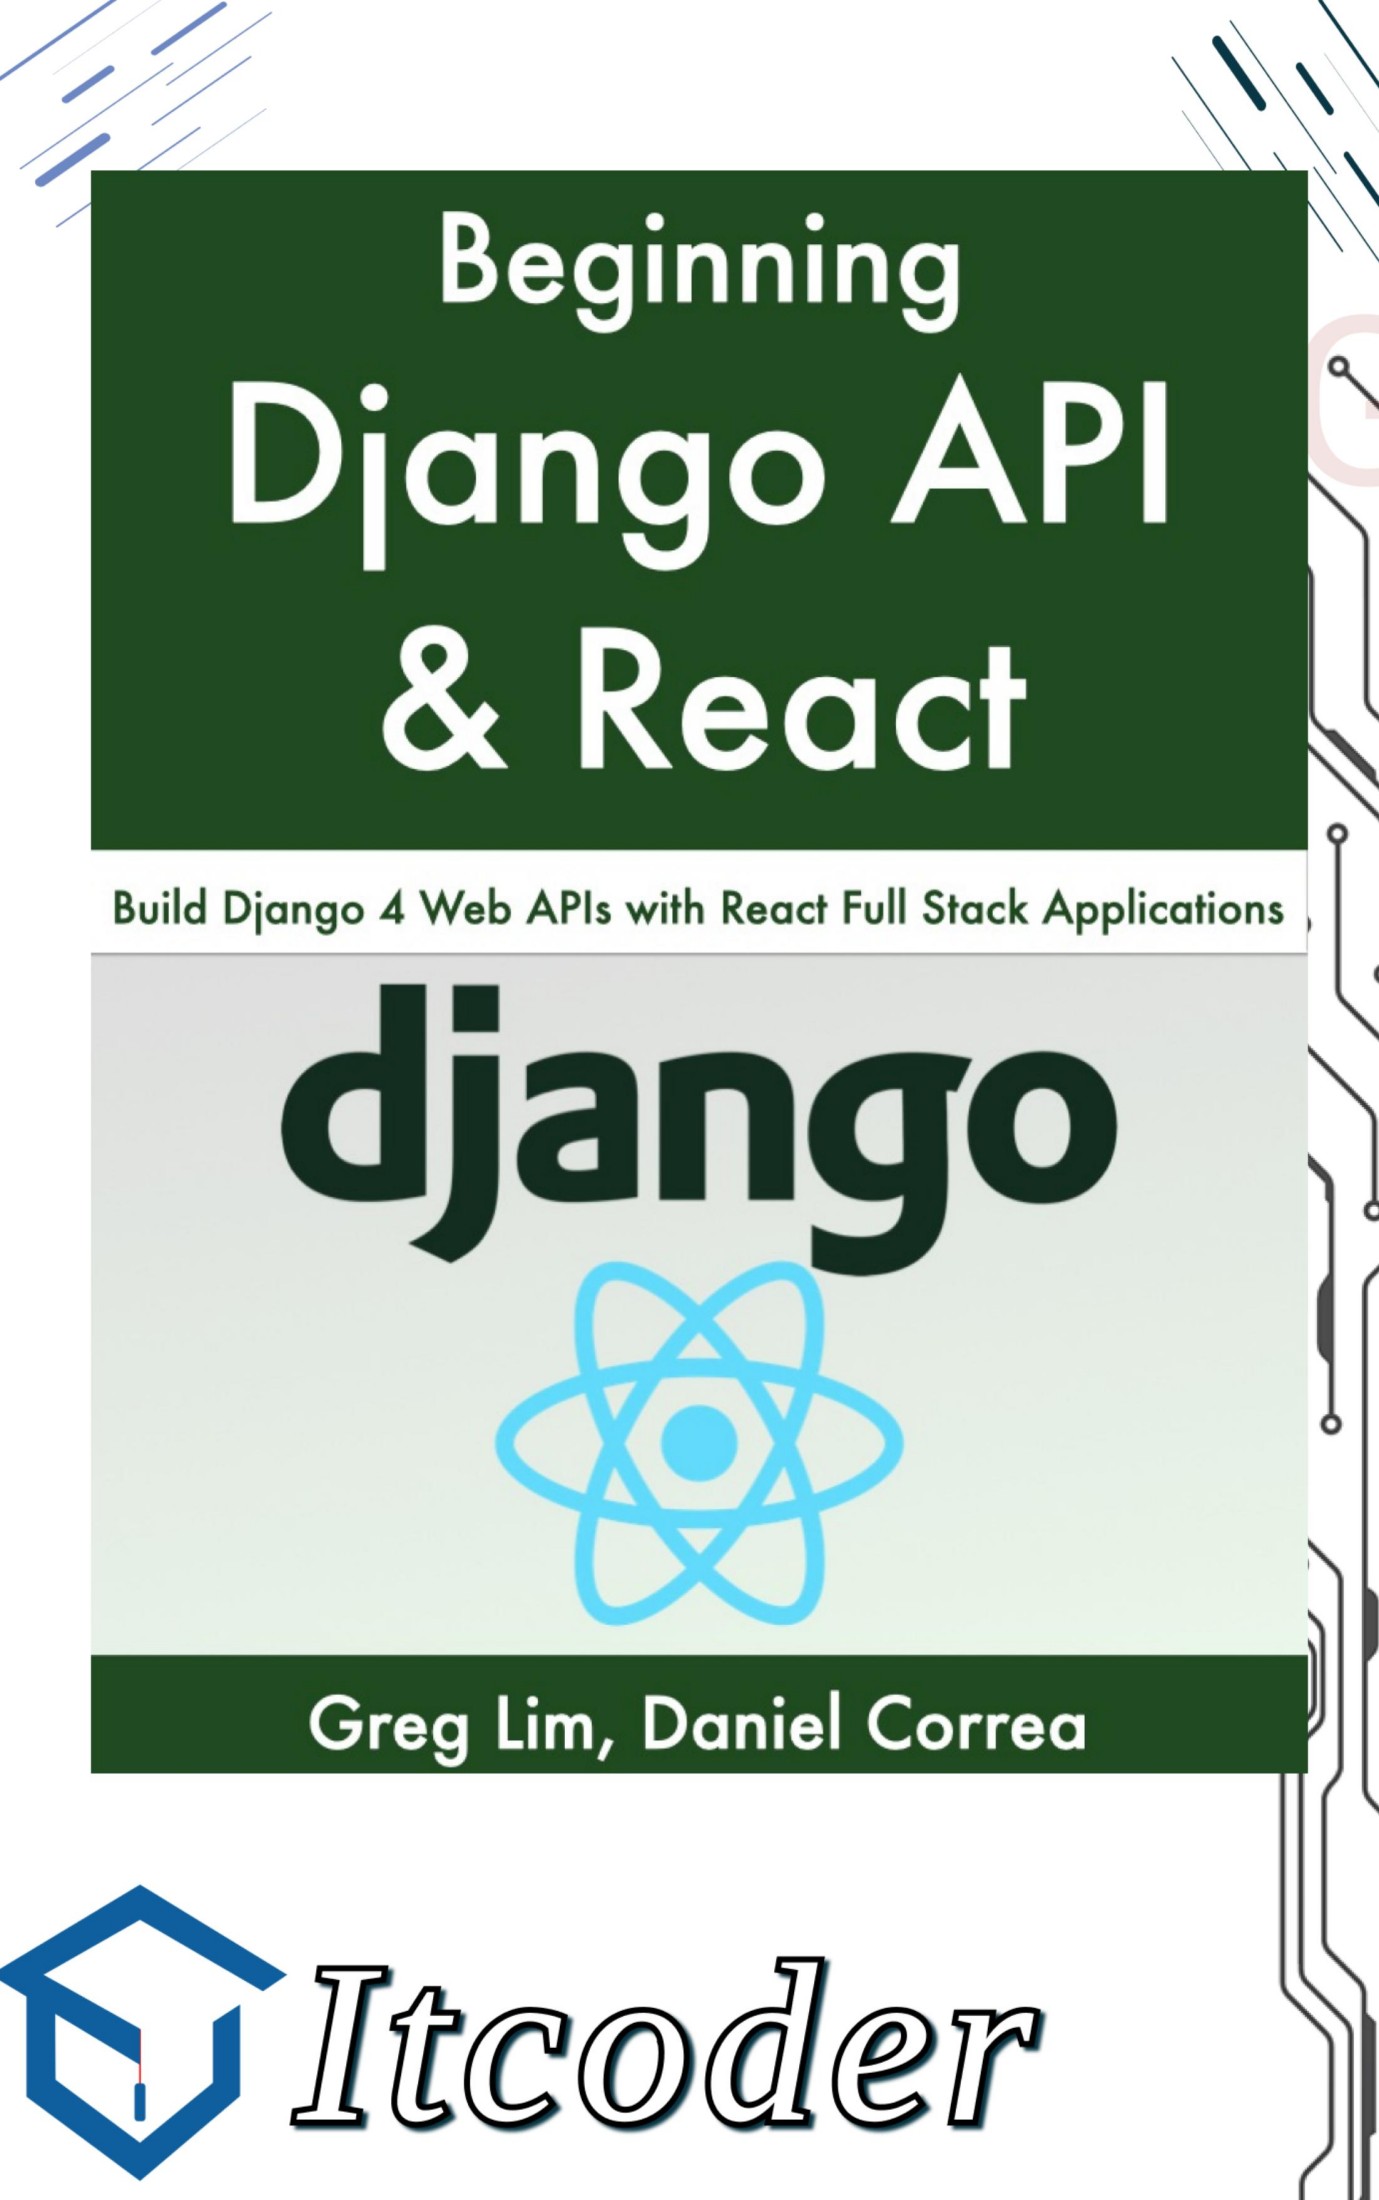 Начало работы с Django API и React